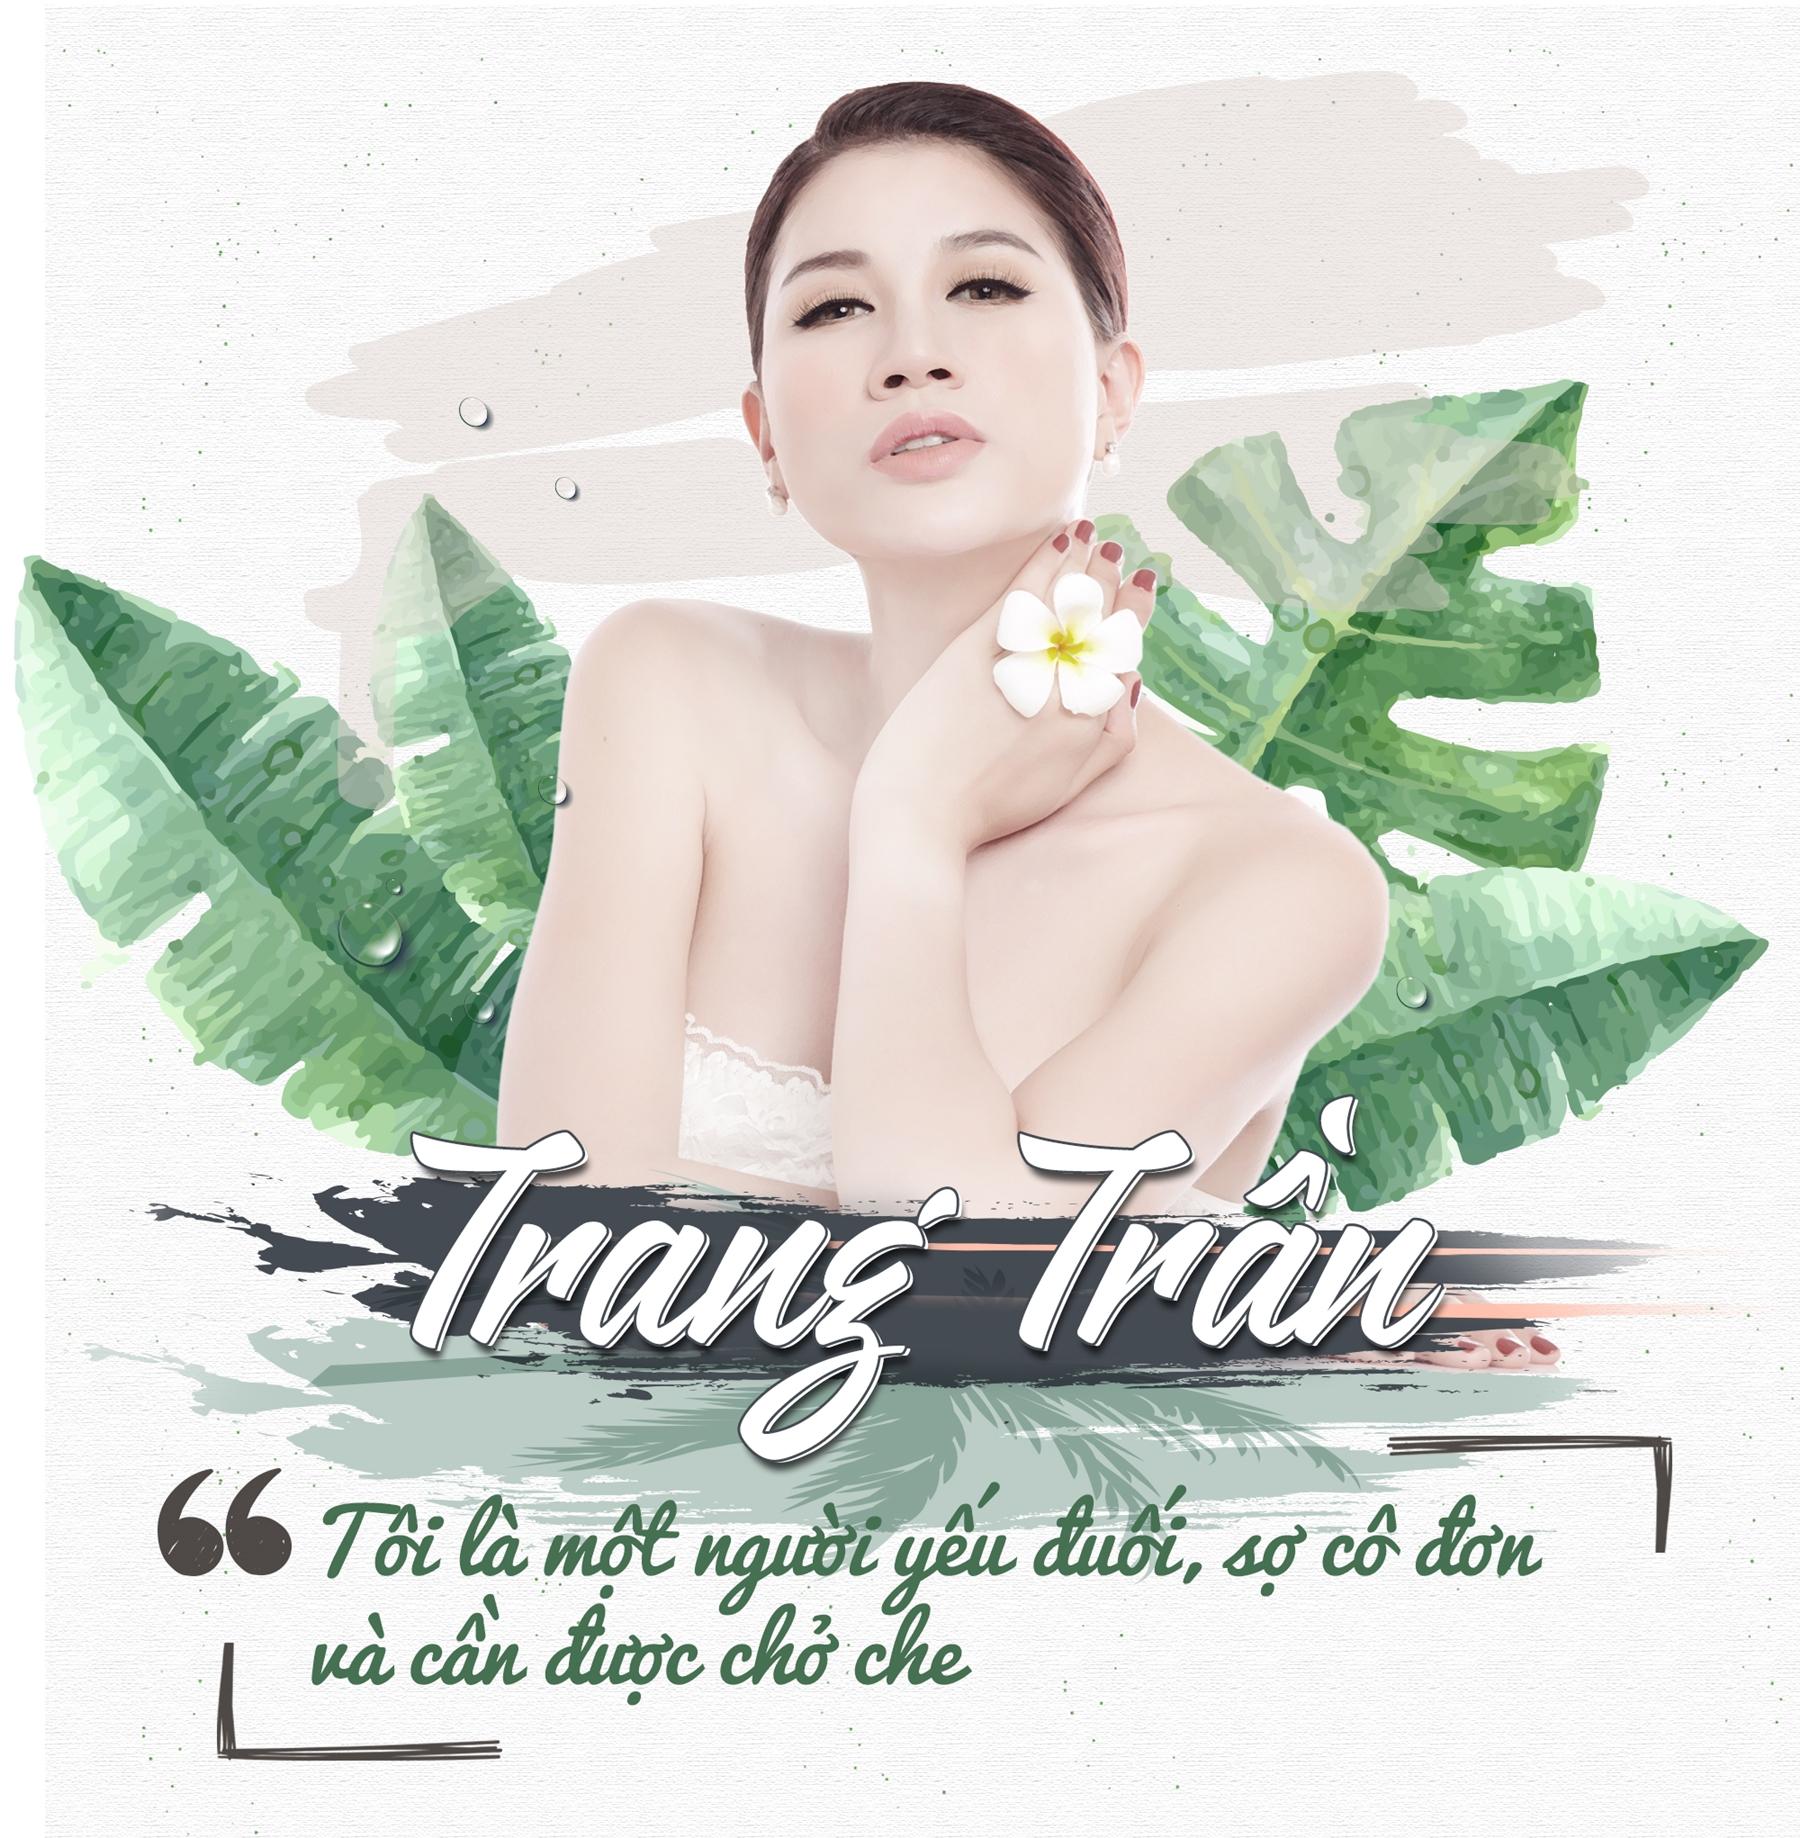 Trang Trần: 'Tôi là một người yếu đuối, sợ cô đơn và cần được chở che'